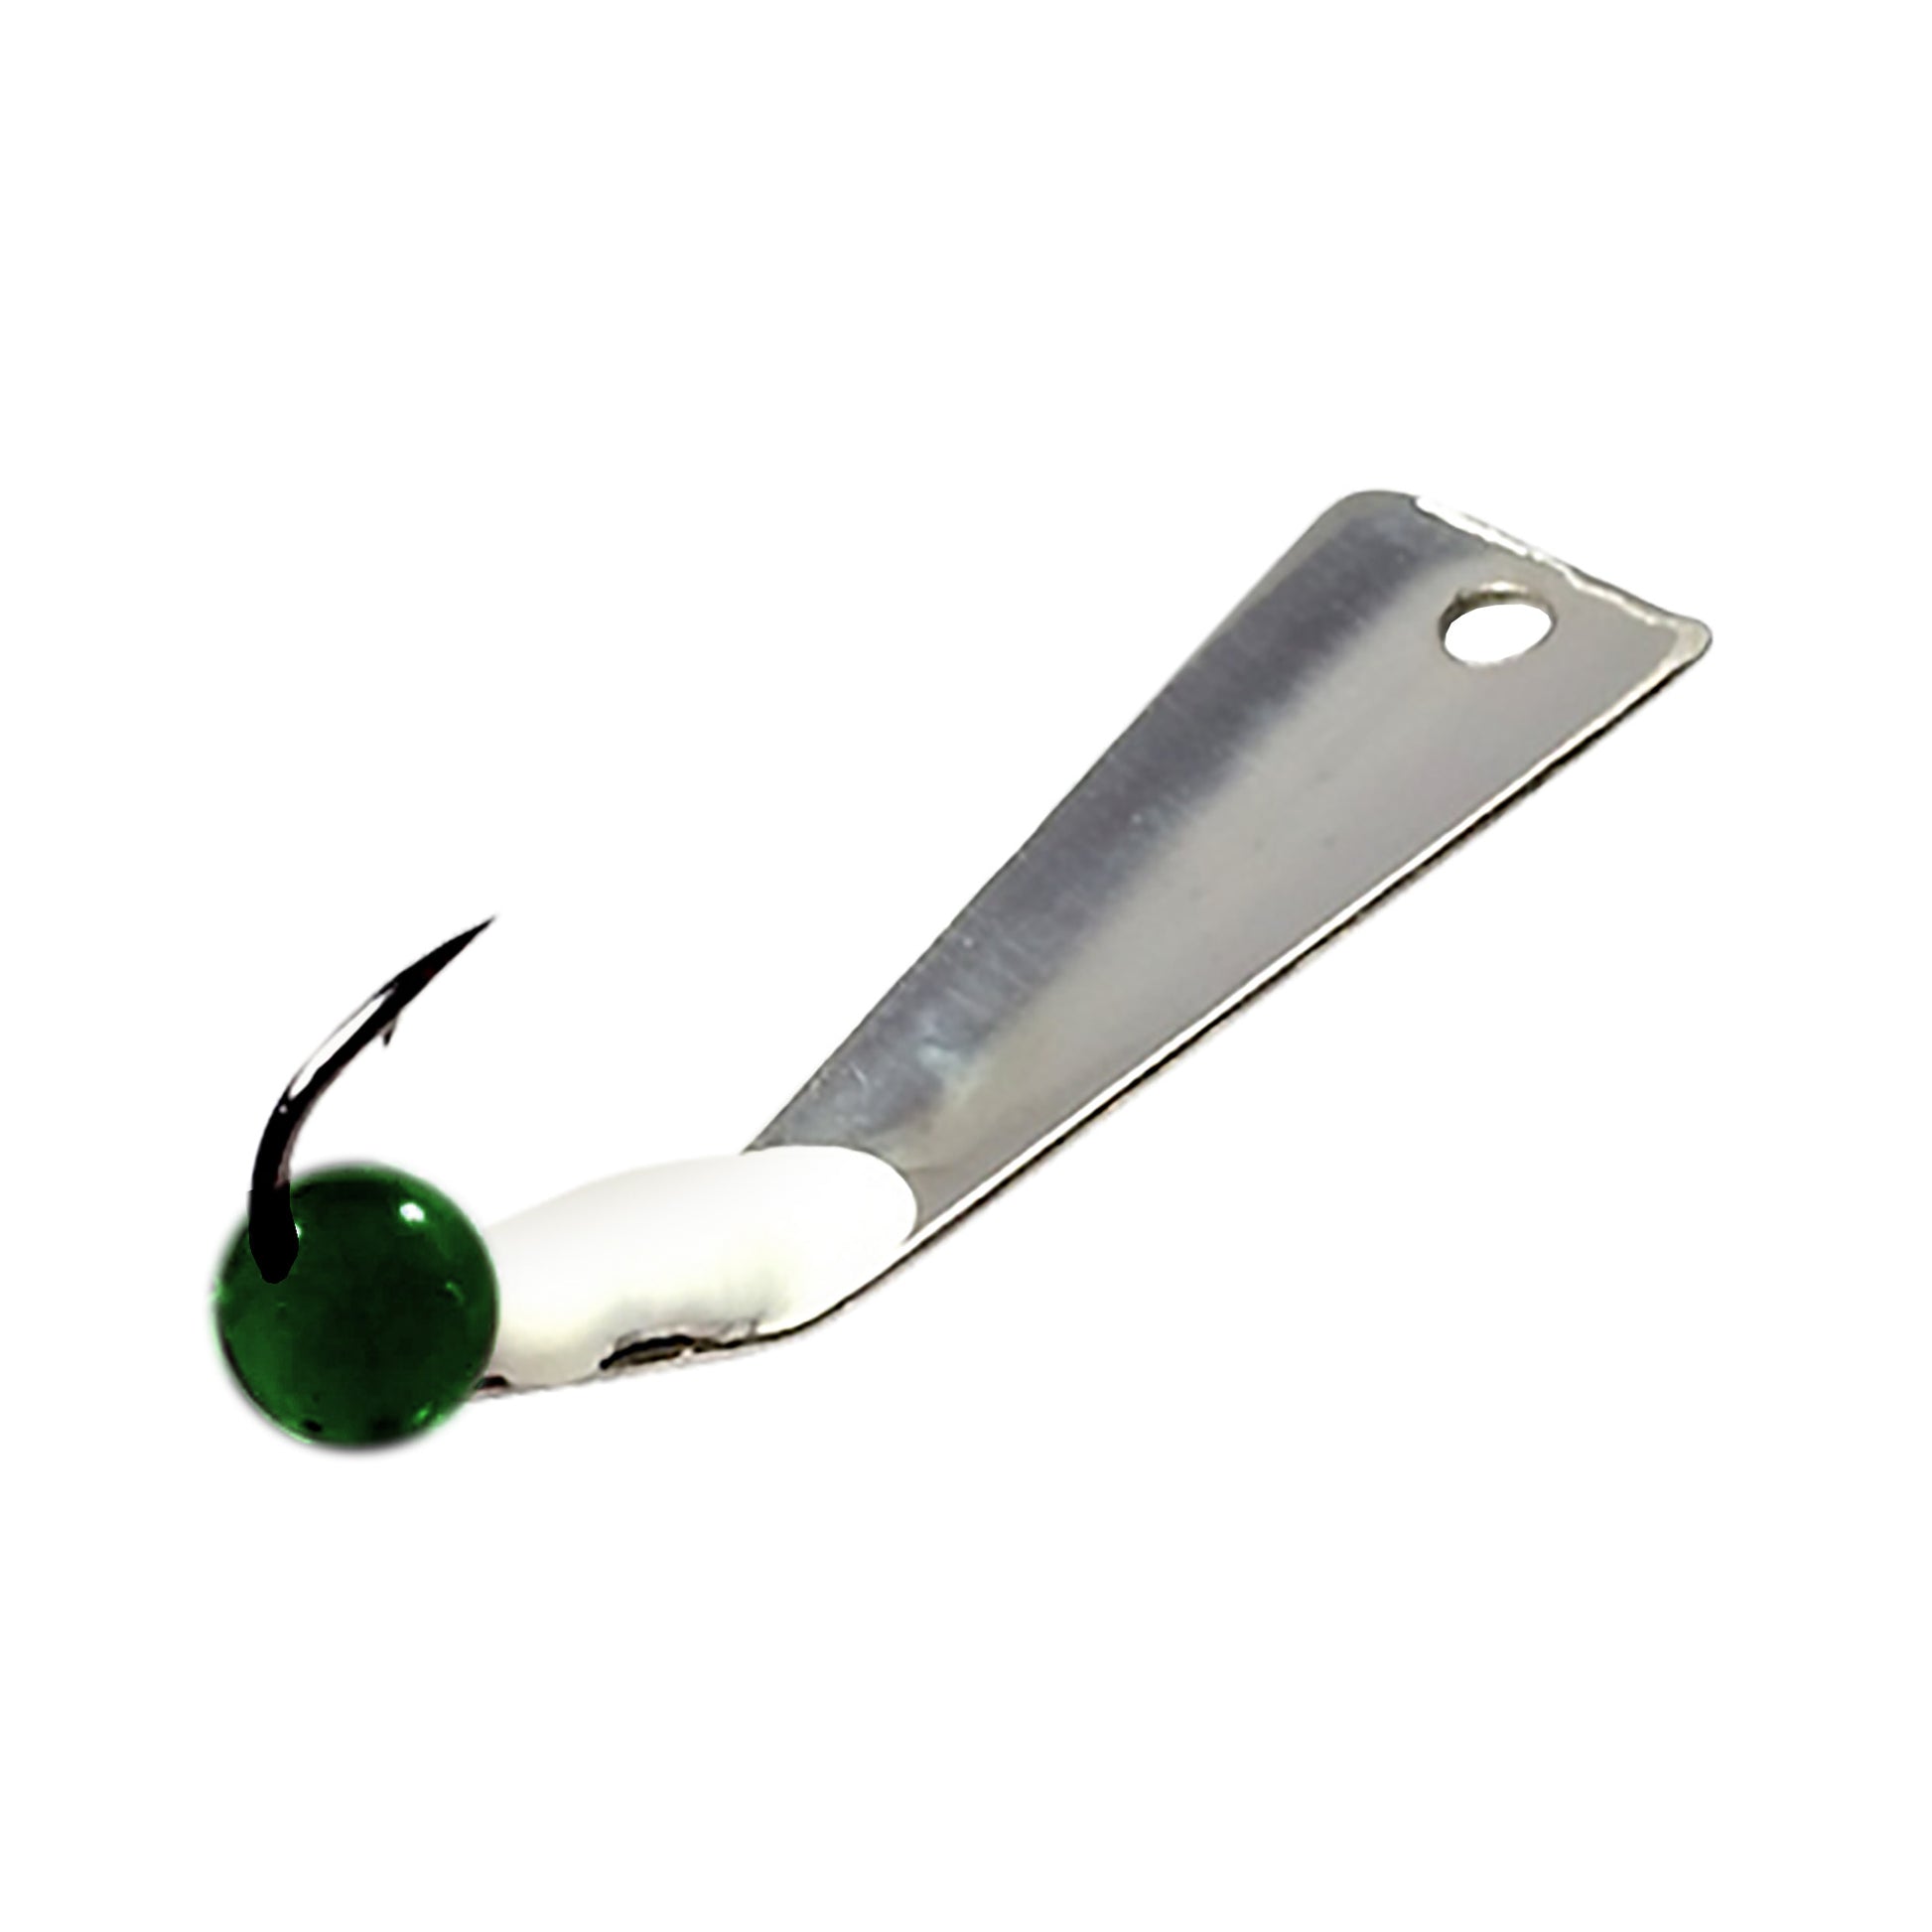 McGathy's Hooks Slab Grabber - Fan Cut - Stainless Steel - Green